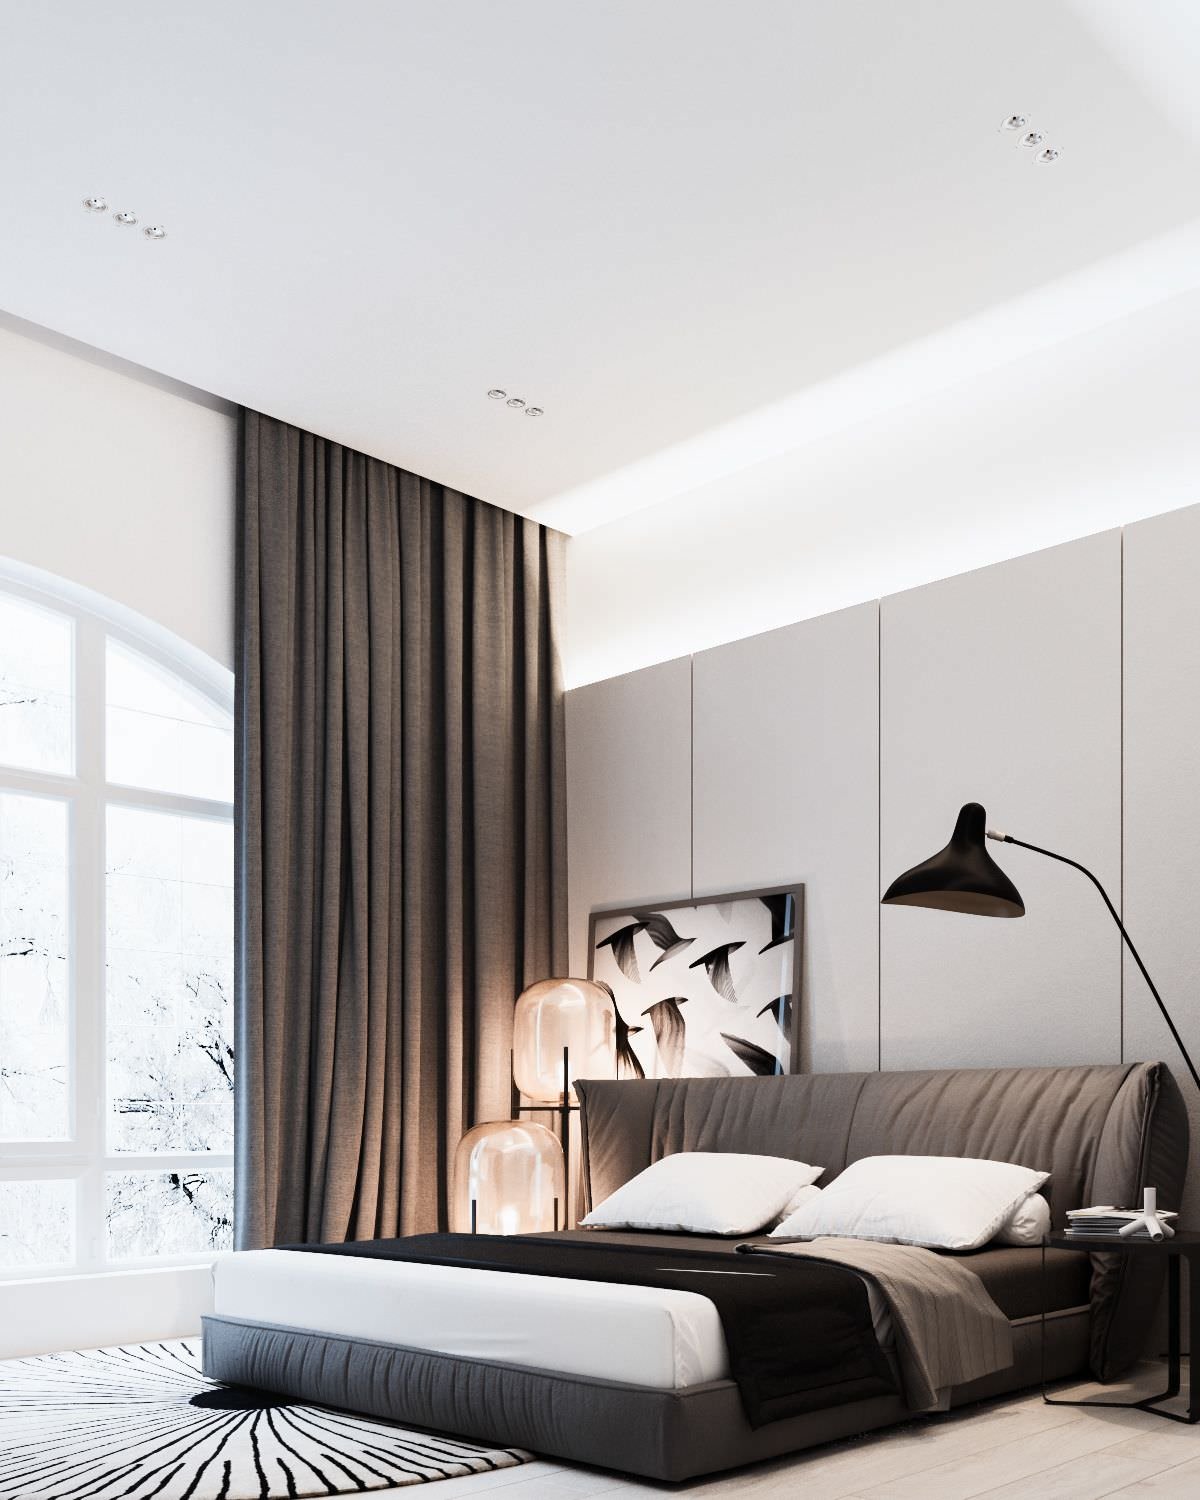 Stanza da letto scandinava, stile moderno minimal, contrasto bianco e nero - grandi finestre e particolare illuminazione